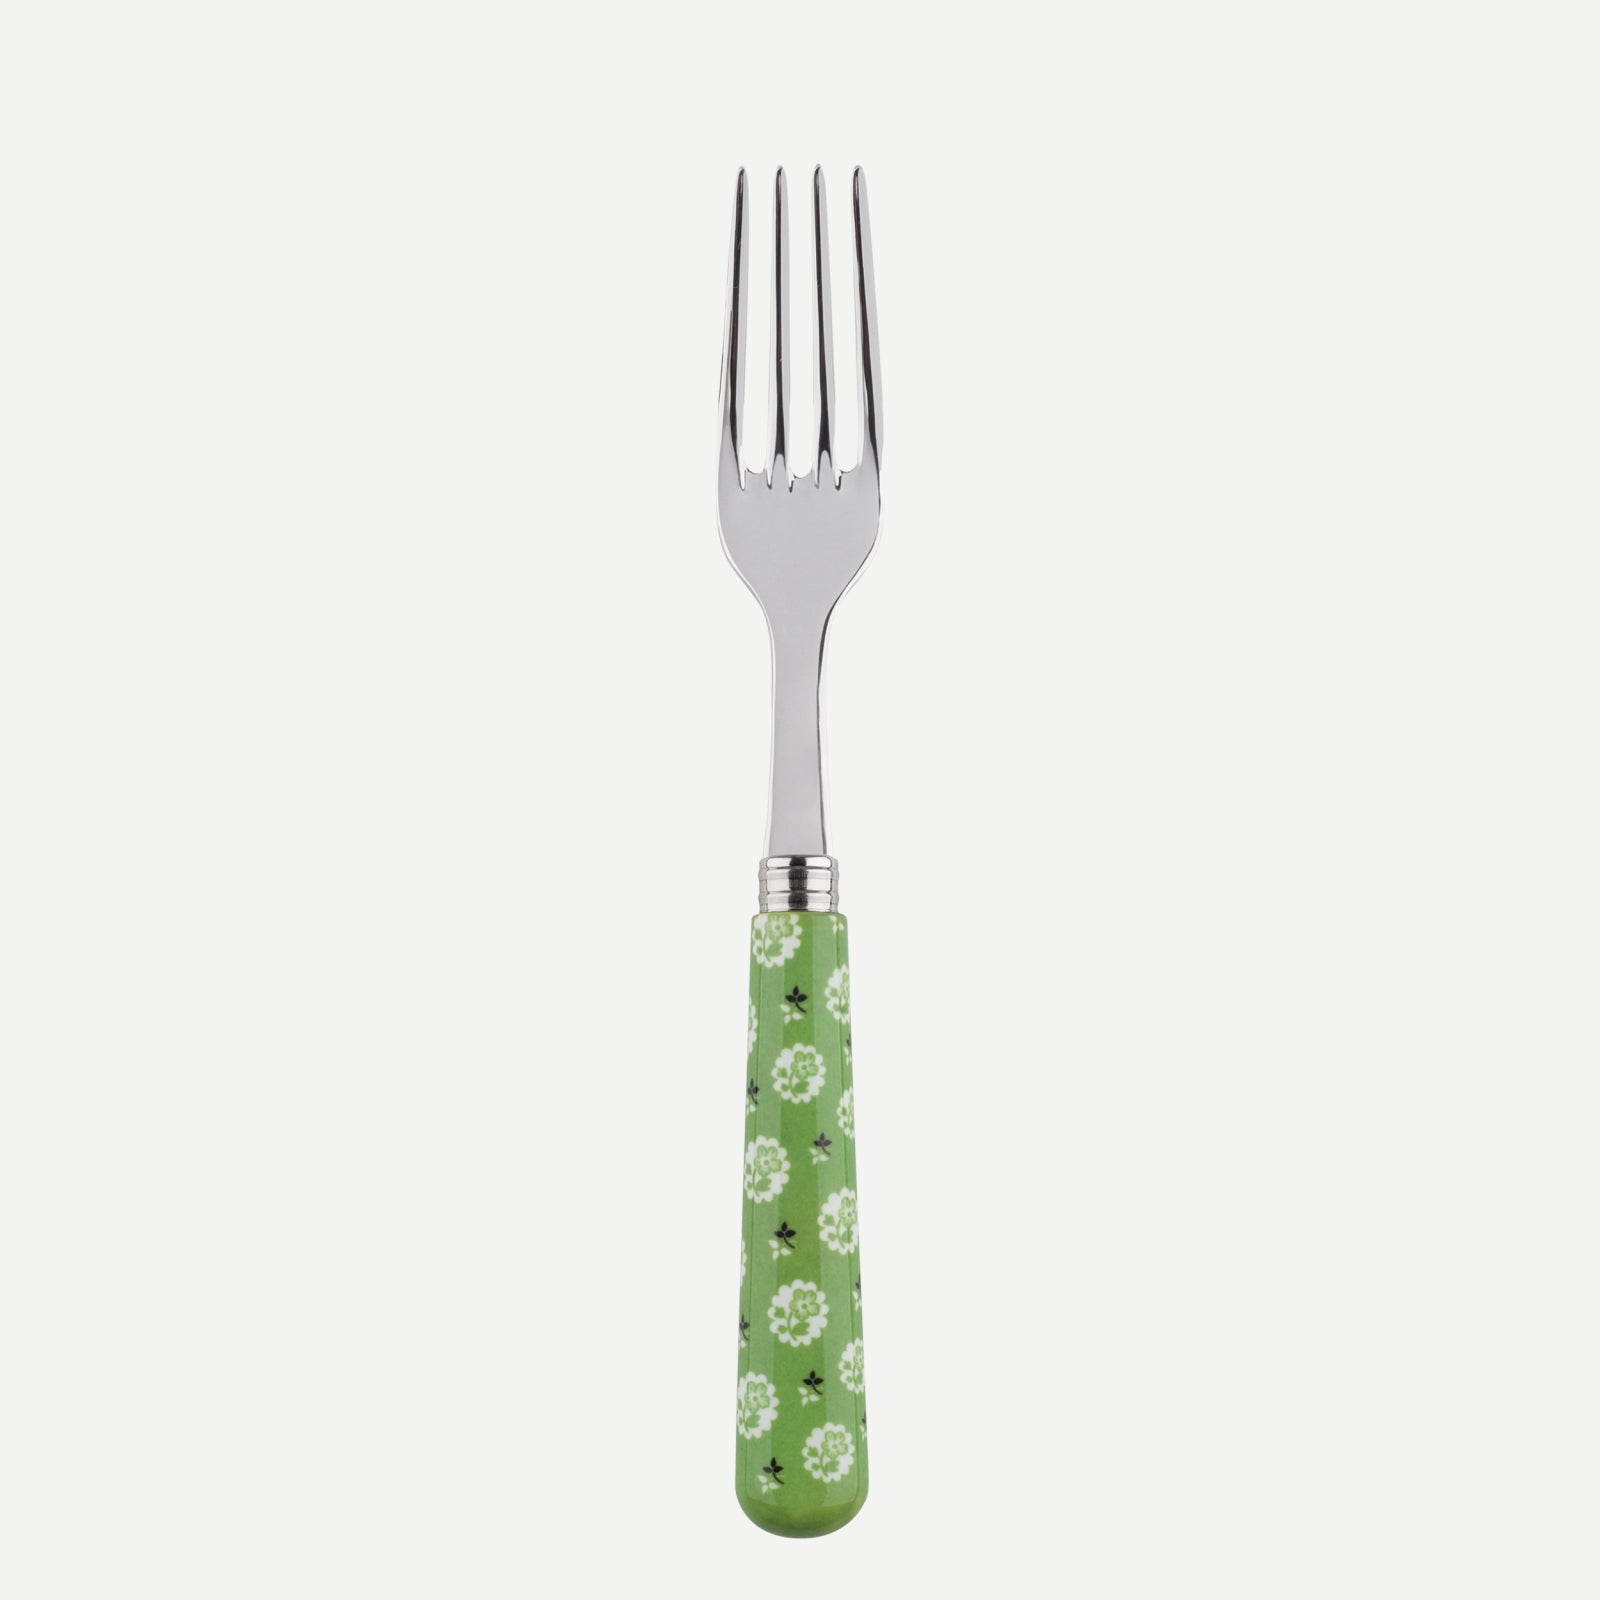 Dinner fork - Provencal - Garden green